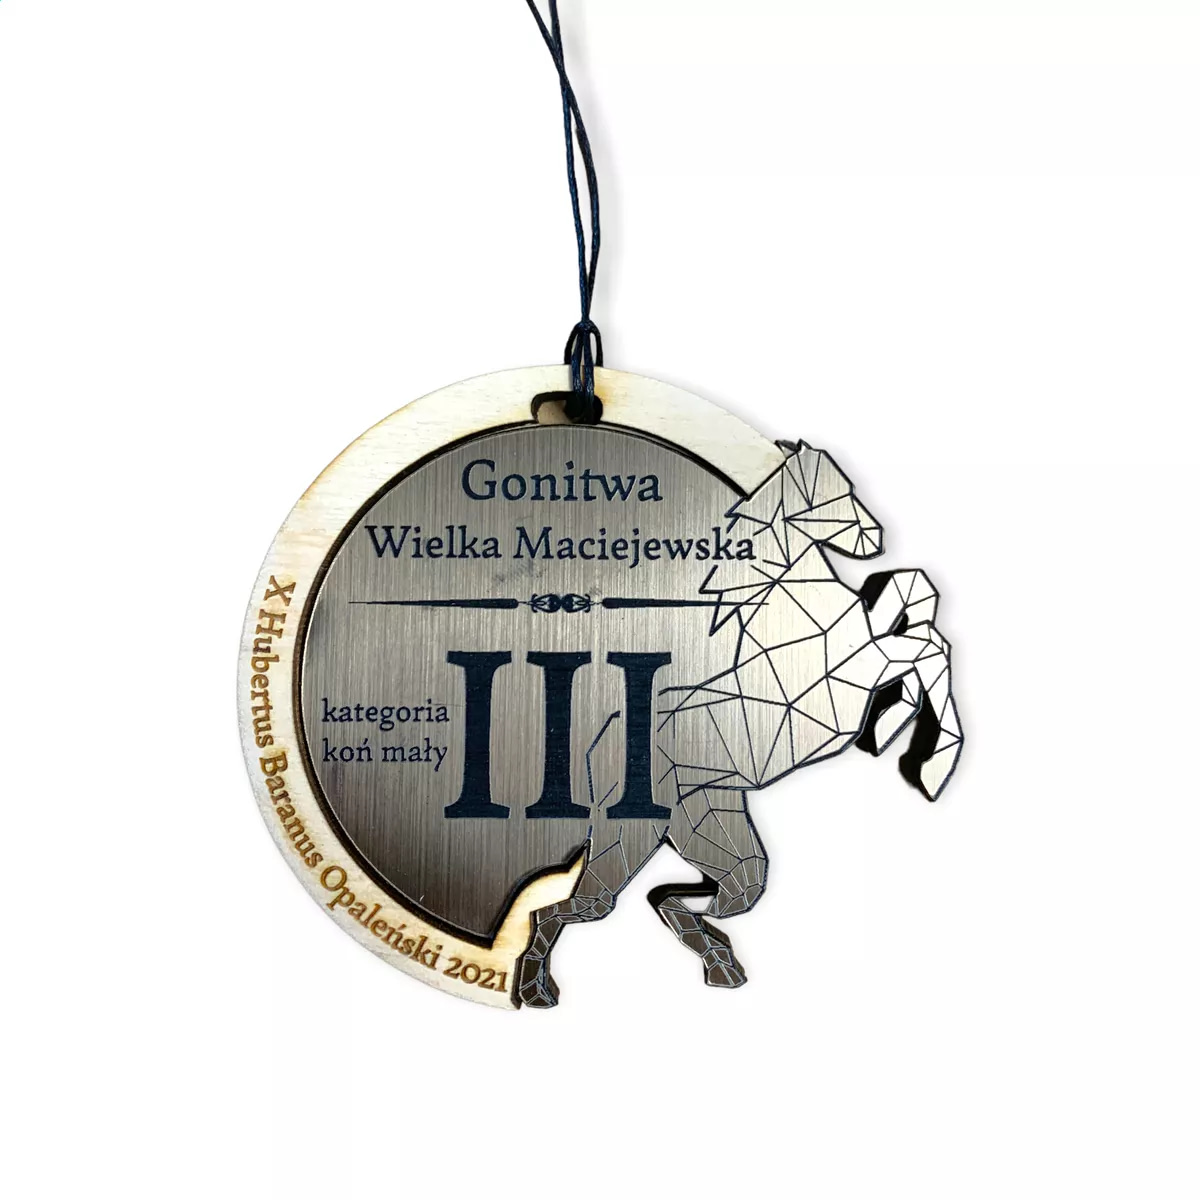 Medale grawerowane z wizerunkiem konia - Gonitwa wielka Maciejewska (3)